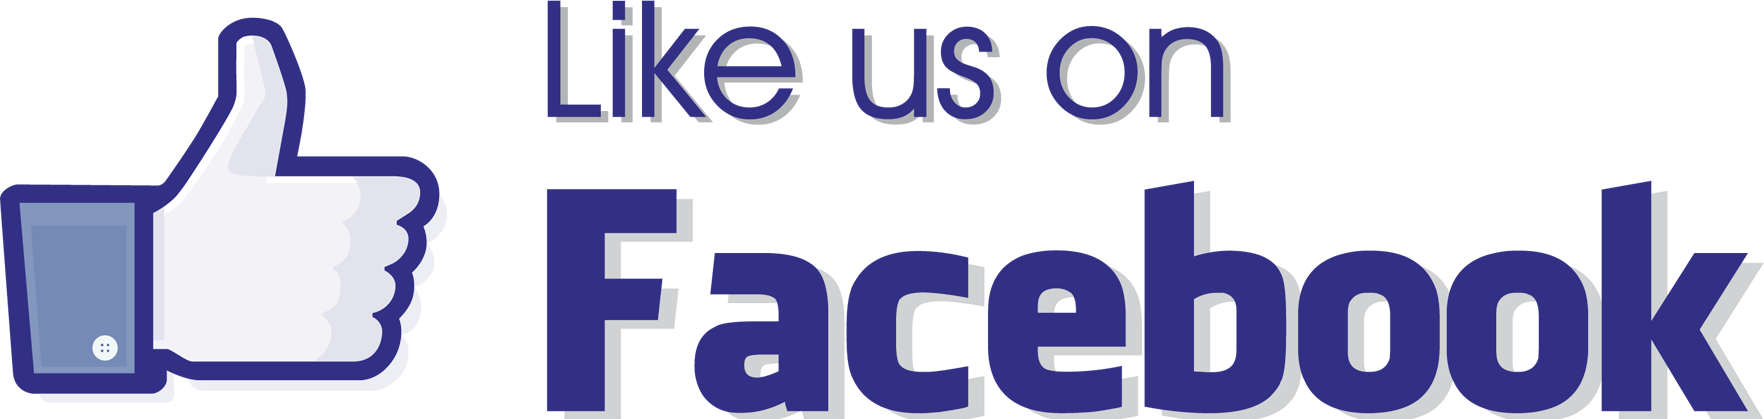 facebook clipart logo fb